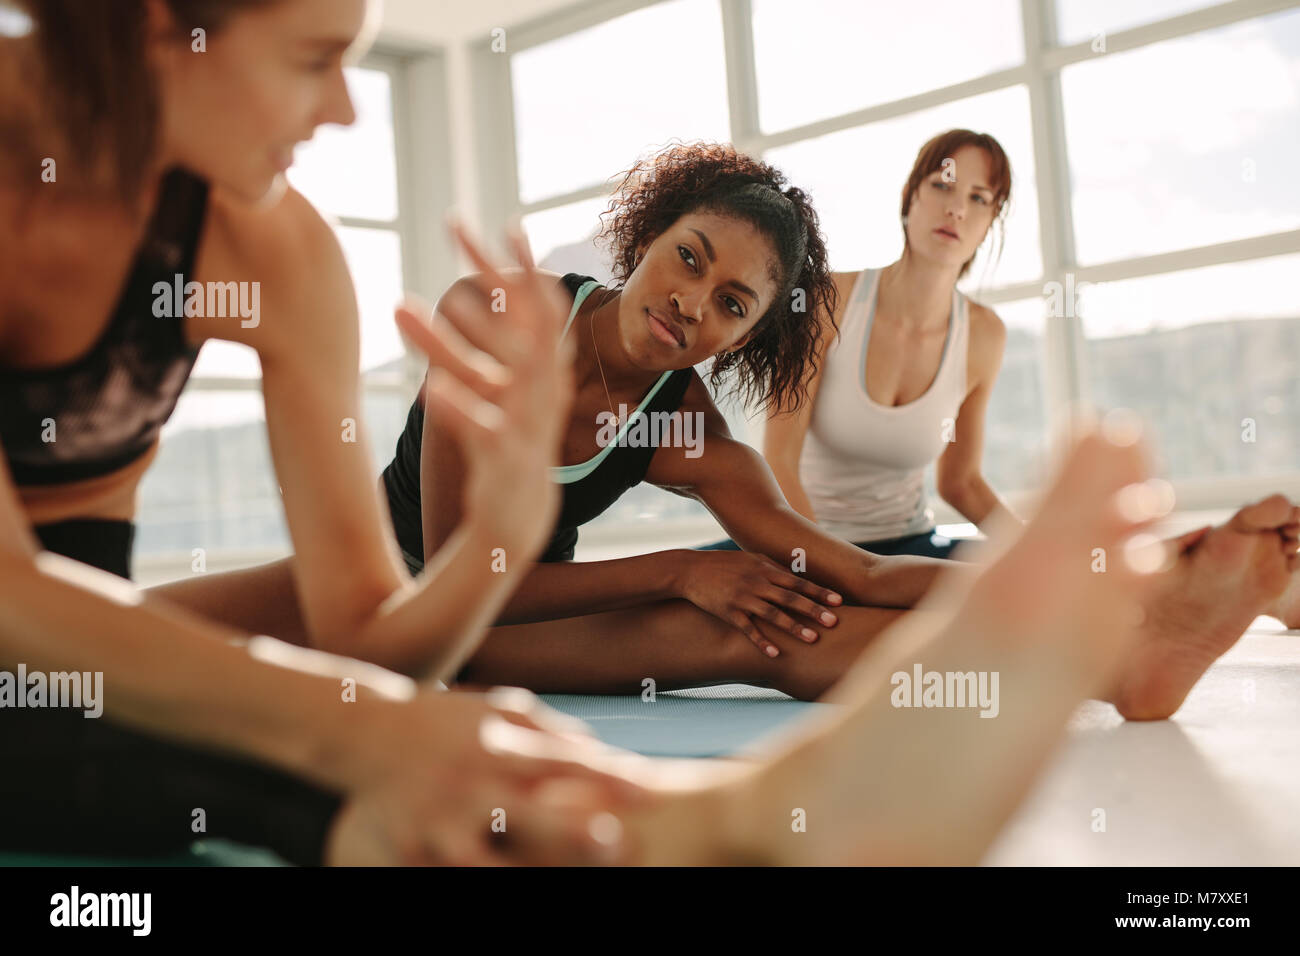 Junge weibliche entspannend und mit dem Sprechen, nachdem Training Session. Weibliche Freunde während Yoga Urlaub im Fitnesscenter. Stockfoto